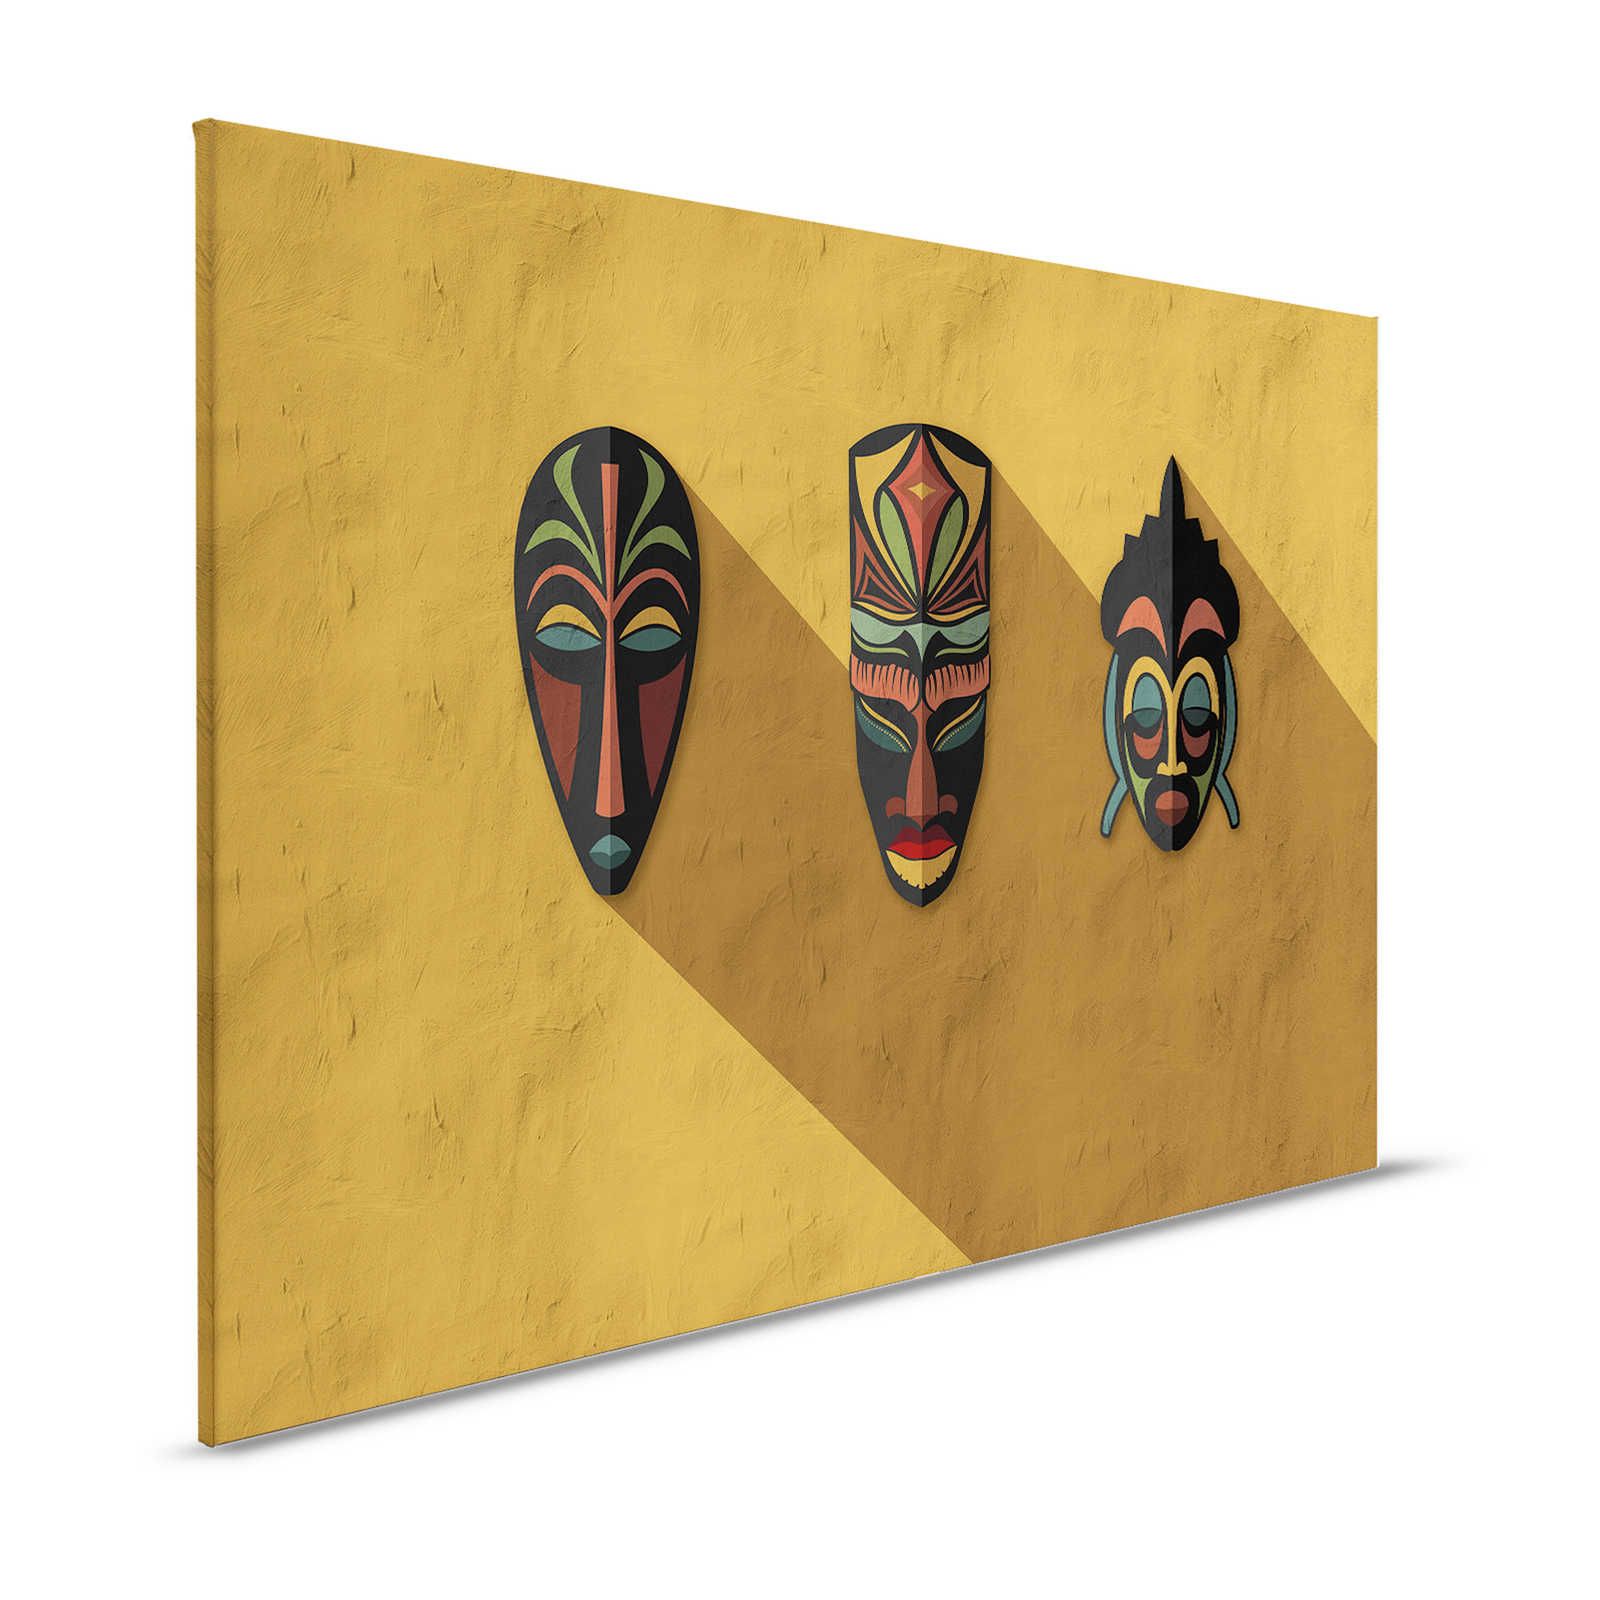 Zulu 1 - Canvas painting Mustard Yellow, Africa Masks Zulu Design - 1.20 m x 0.80 m
